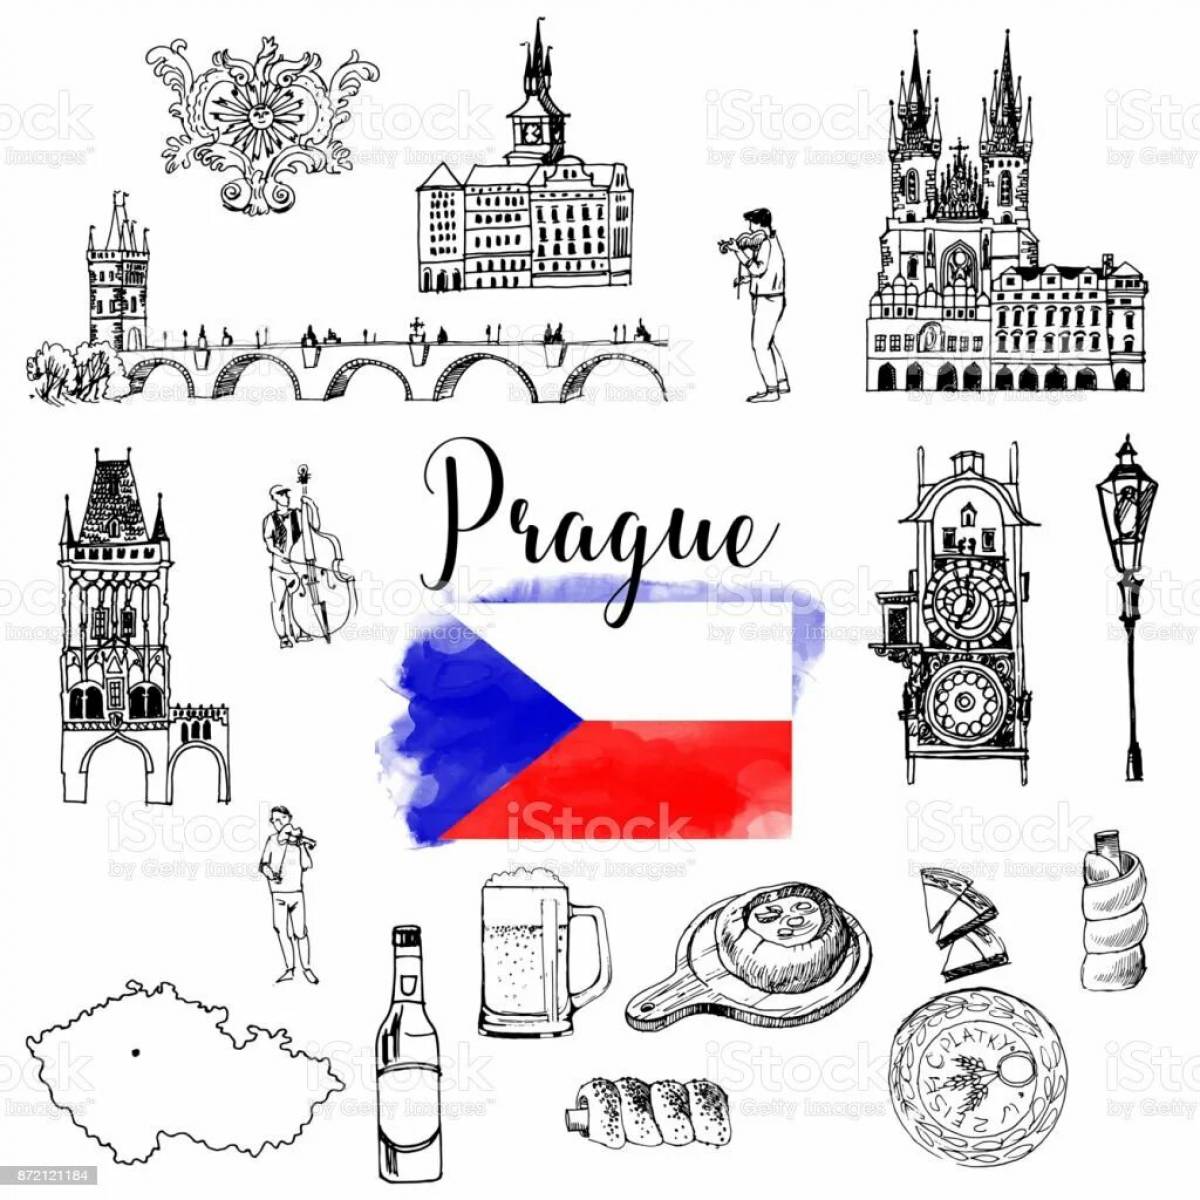 Раскраска привлекательный флаг чешской республики